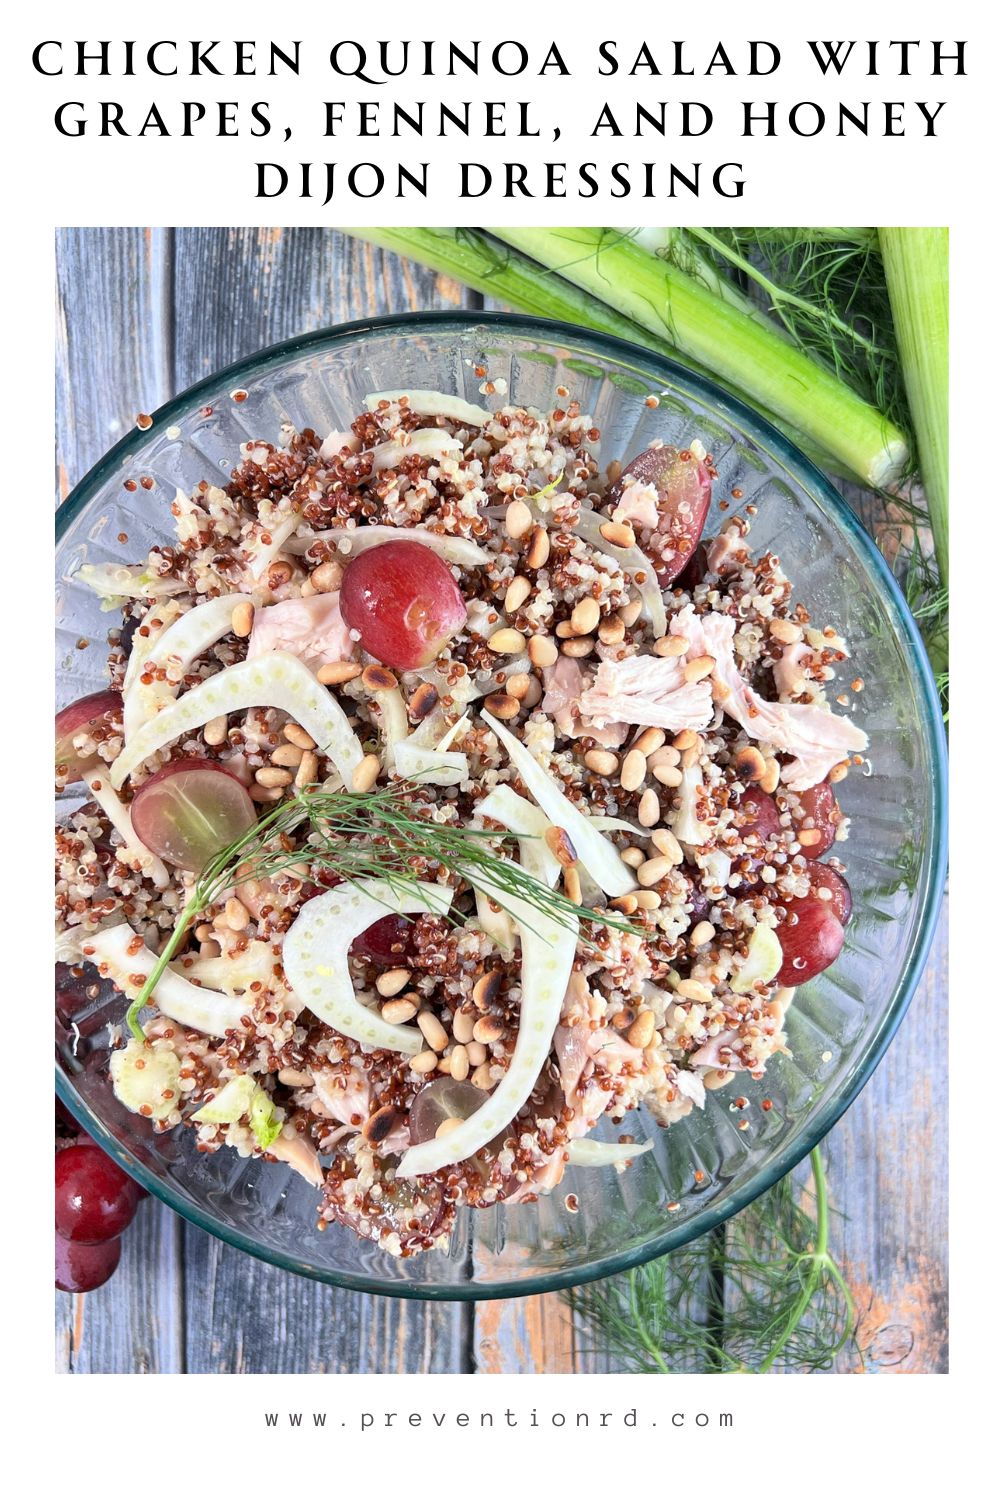 Chicken Quinoa Salad with Grapes, Fennel, and Honey Dijon Dressing via @preventionrd